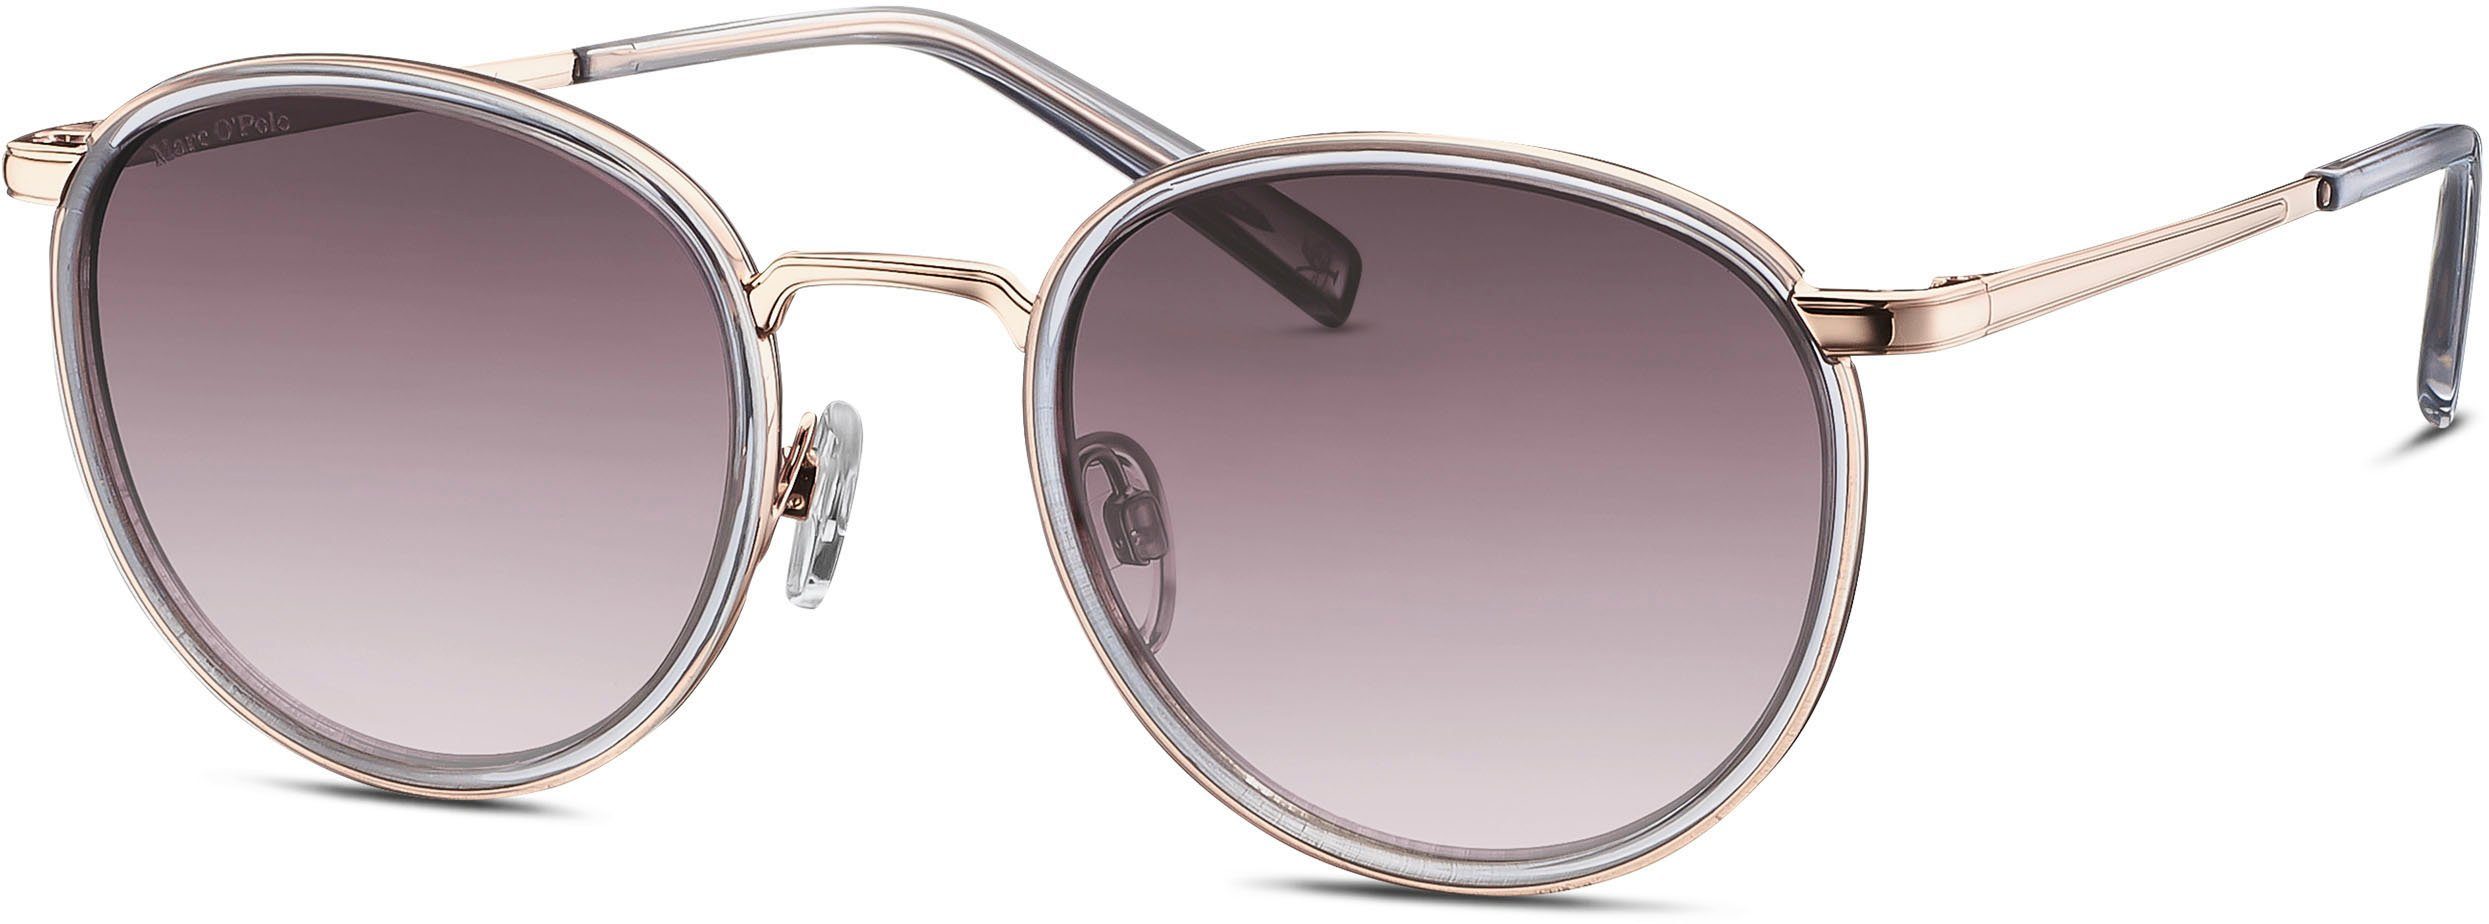 Marc O'Polo Sonnenbrille Modell 505105 Panto-Form rosegoldfarben | Sonnenbrillen